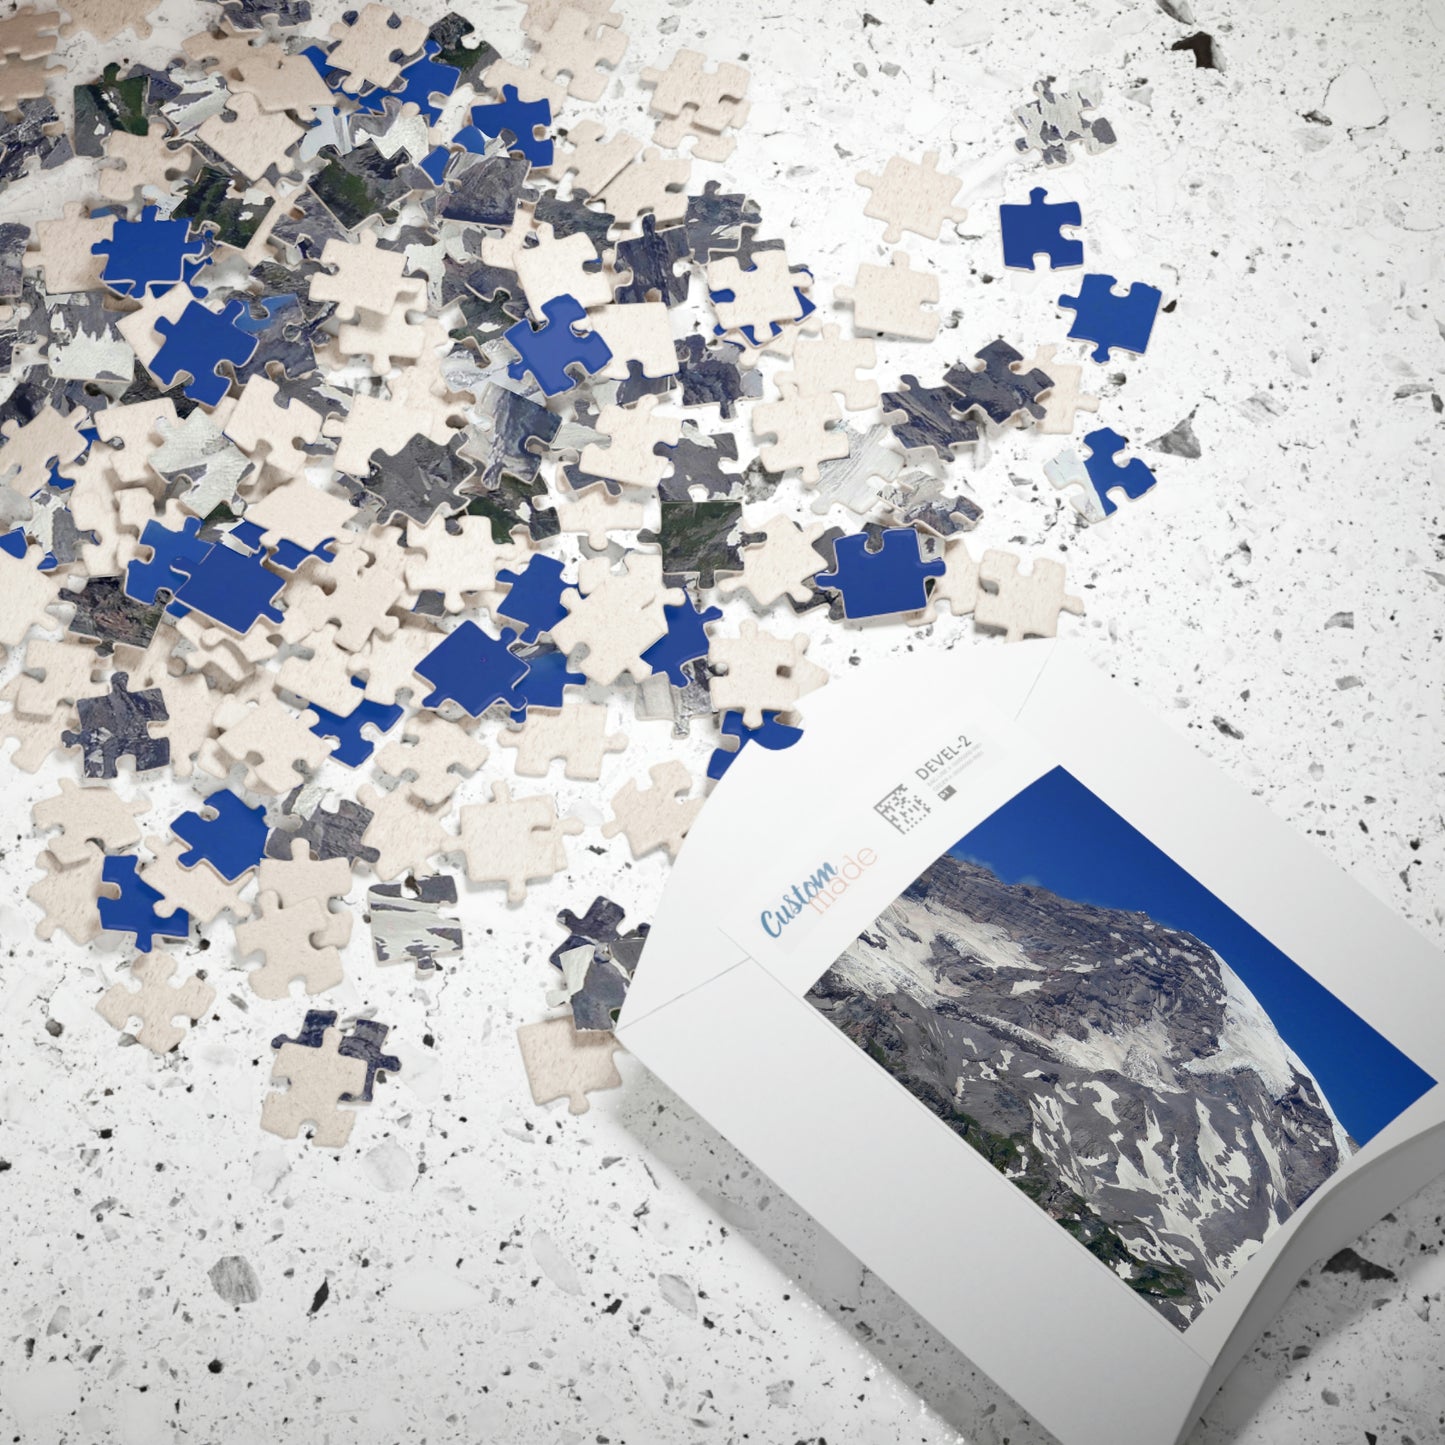 Majestic Mt. Rainier - Puzzle, Horizontal (110, 252, 500, 1014-piece) - Fry1Productions